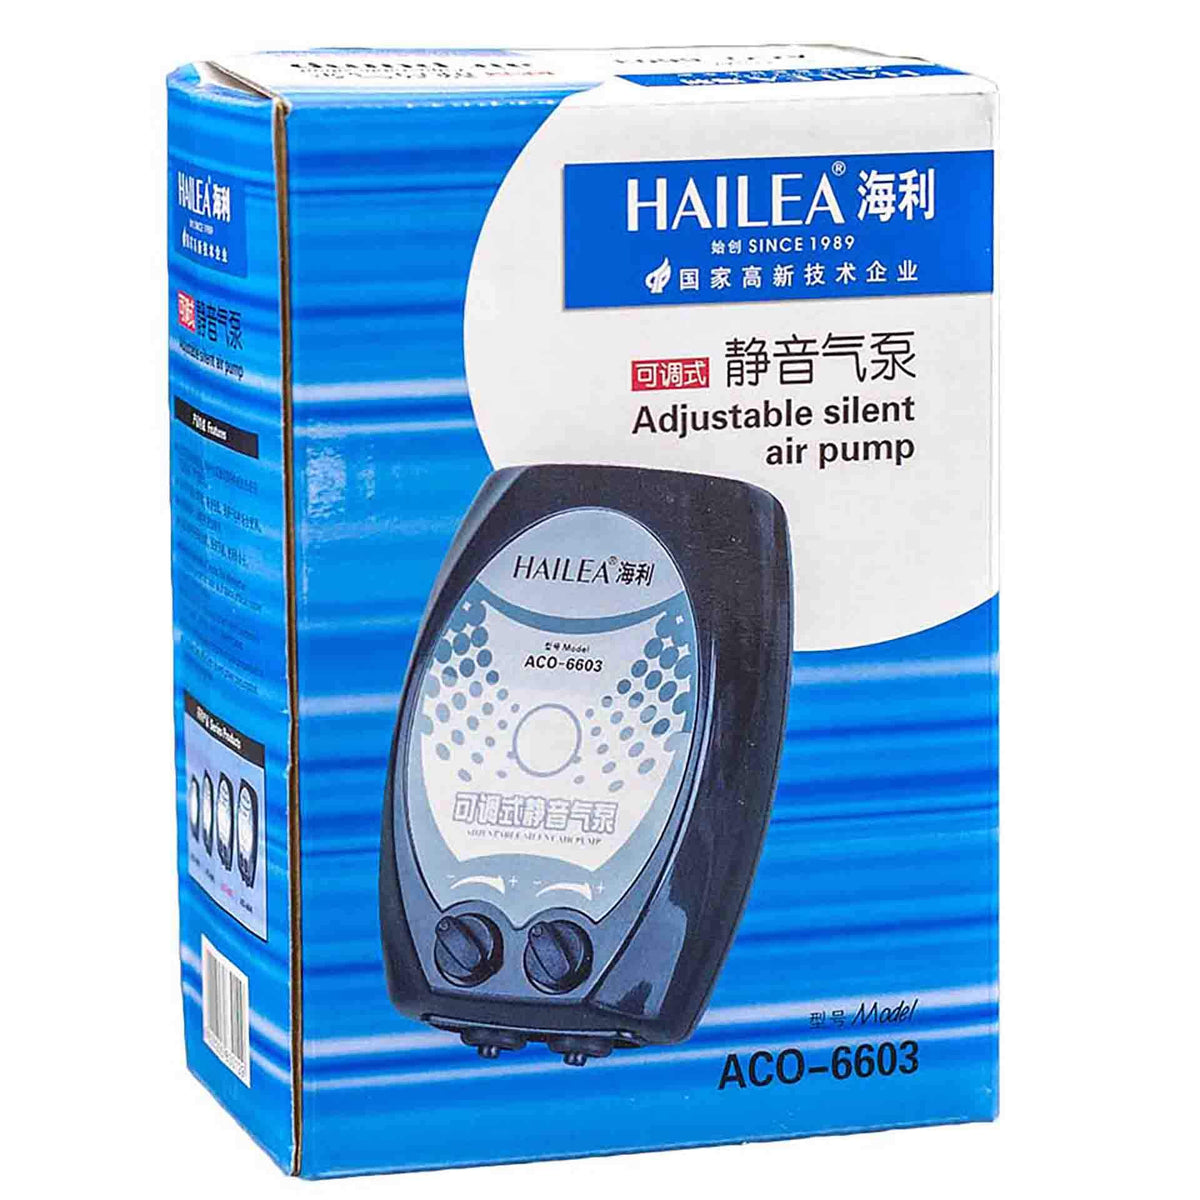 Hailea 66 Series Adjustable Silent Air Pump - Dual Outlet 2 x 3.5L/min